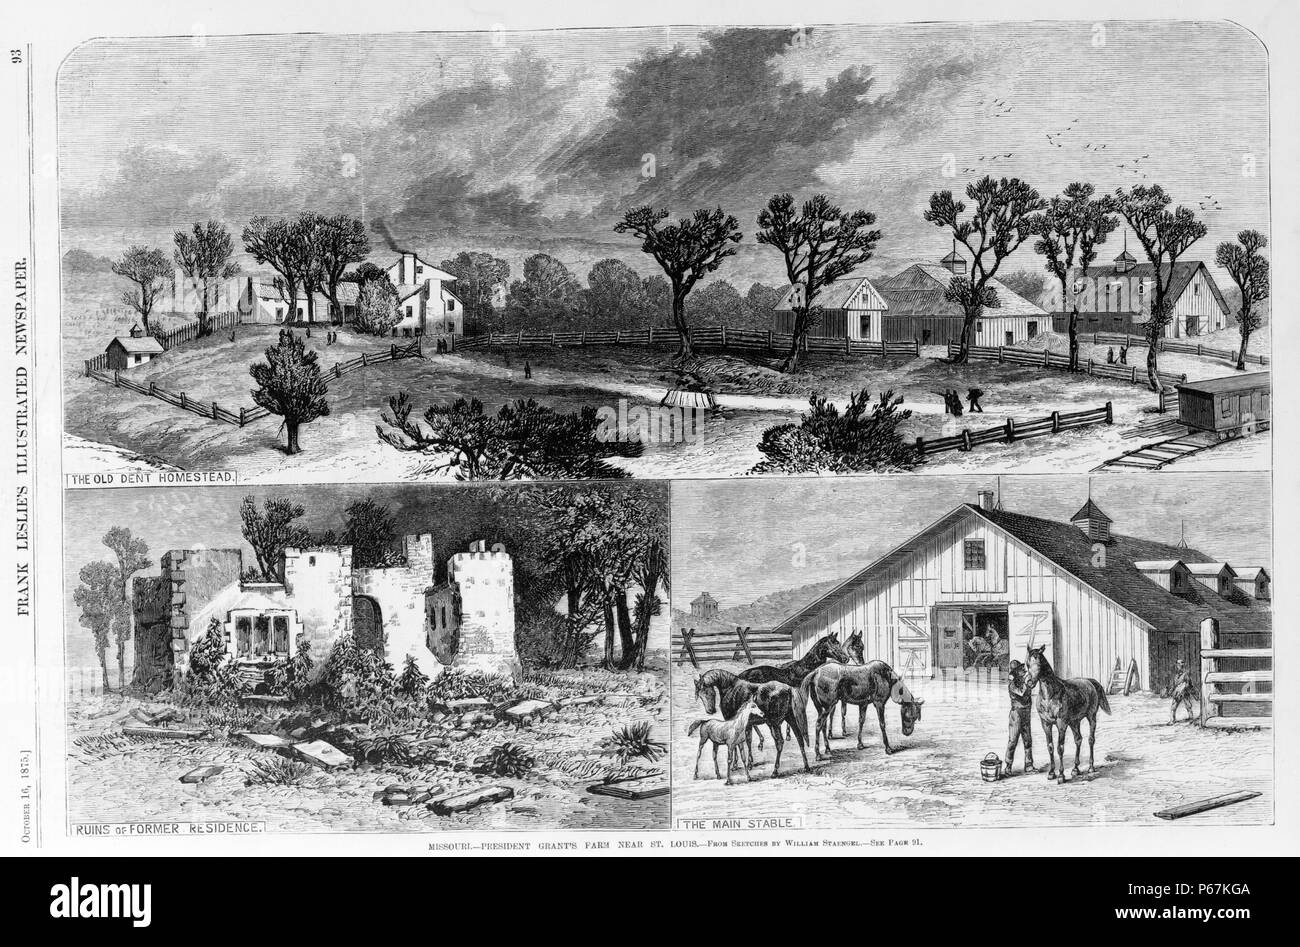 Missouri - Präsident Grant's Farm in der Nähe von St. Louis. Ulysses Grant war der 18. Präsident der Vereinigten Staaten. Vor seiner Amtszeit als Präsident er General war und führte die Union Armeen Sieg über der Konföderierten im amerikanischen Bürgerkrieg zu. Stockfoto